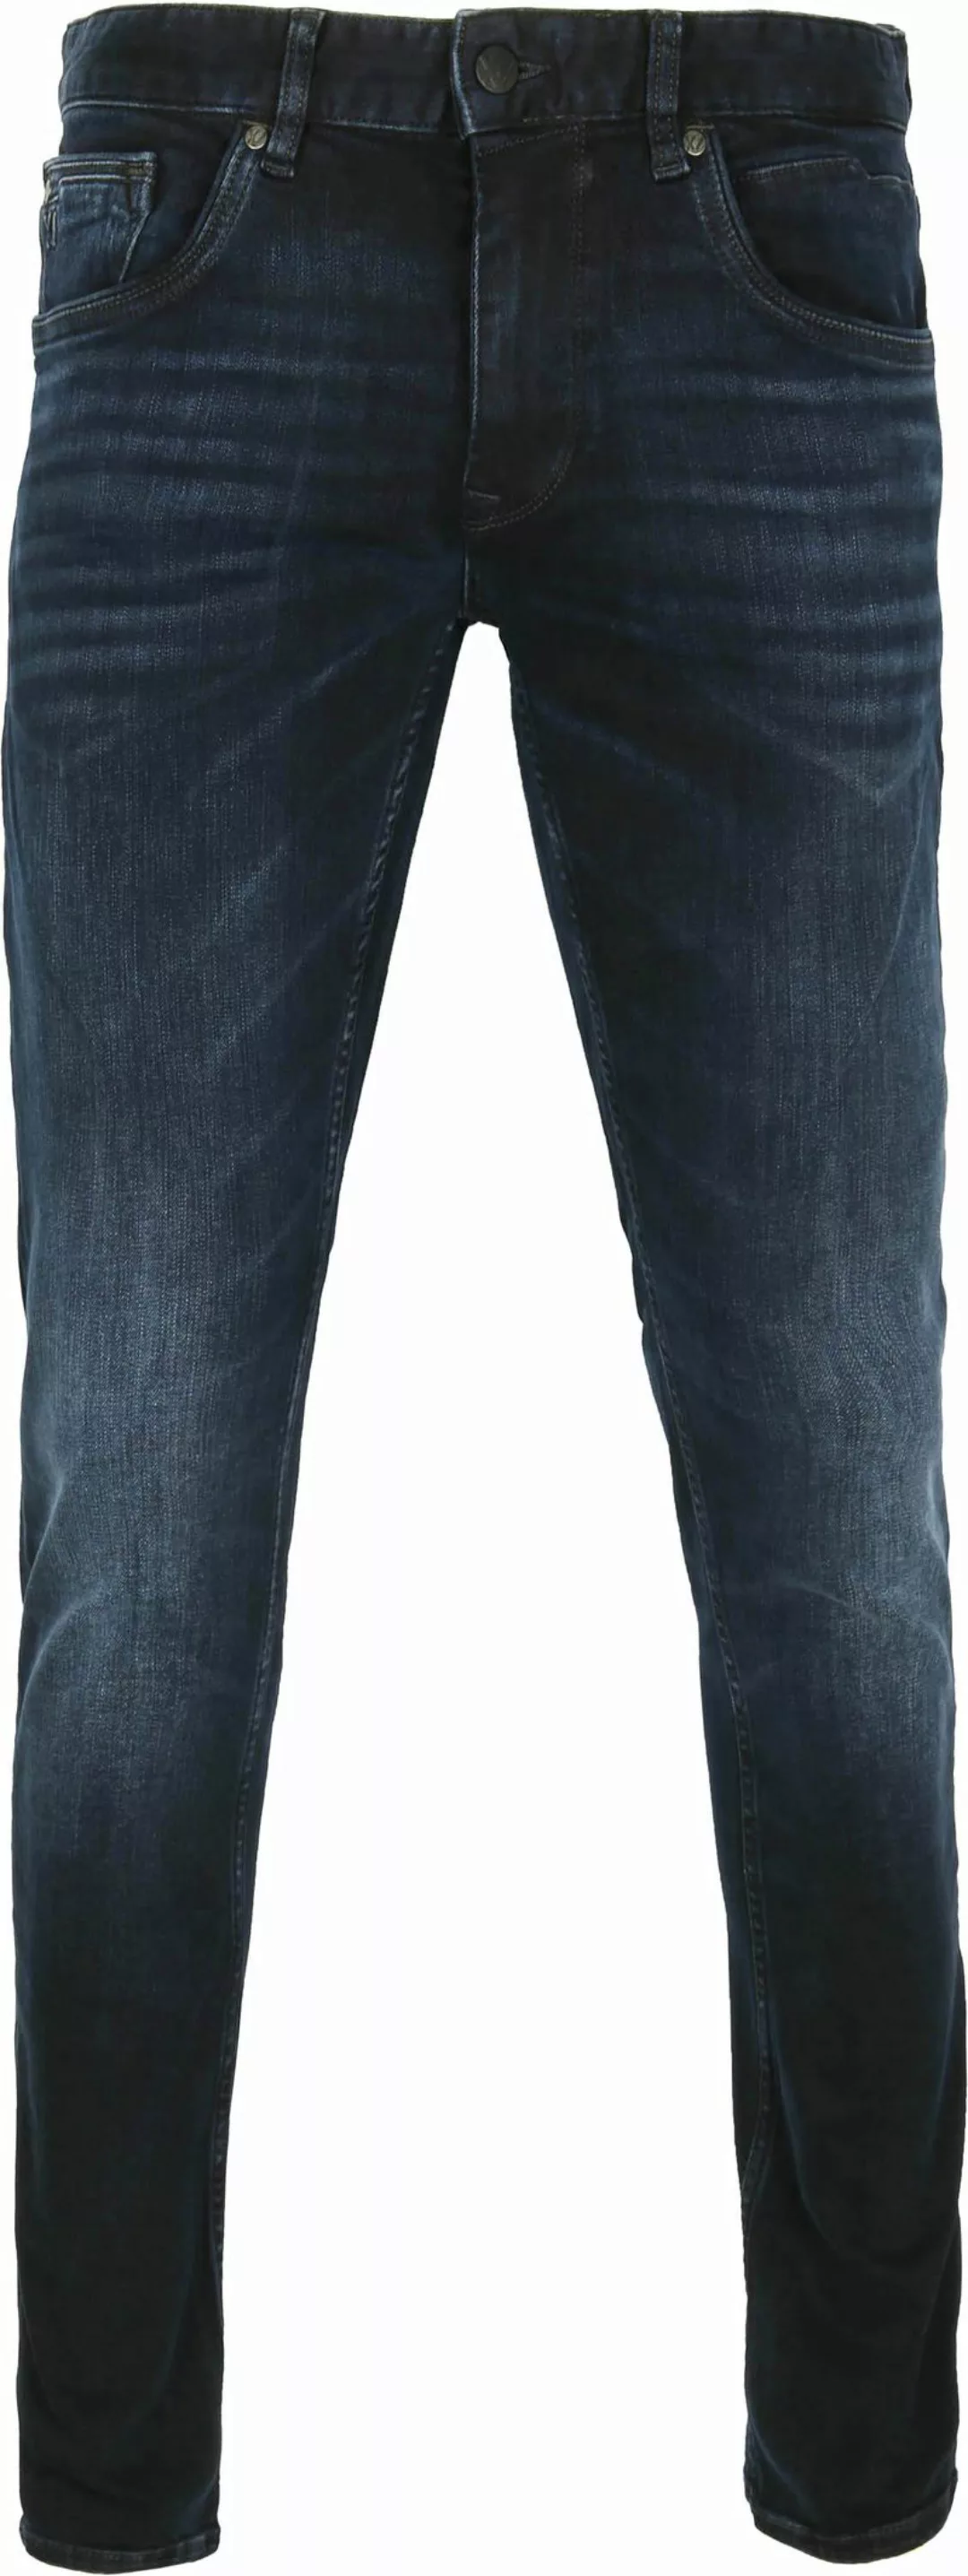 PME Legend XV Jeans Blue Black PTR150 - Größe W 38 - L 34 günstig online kaufen